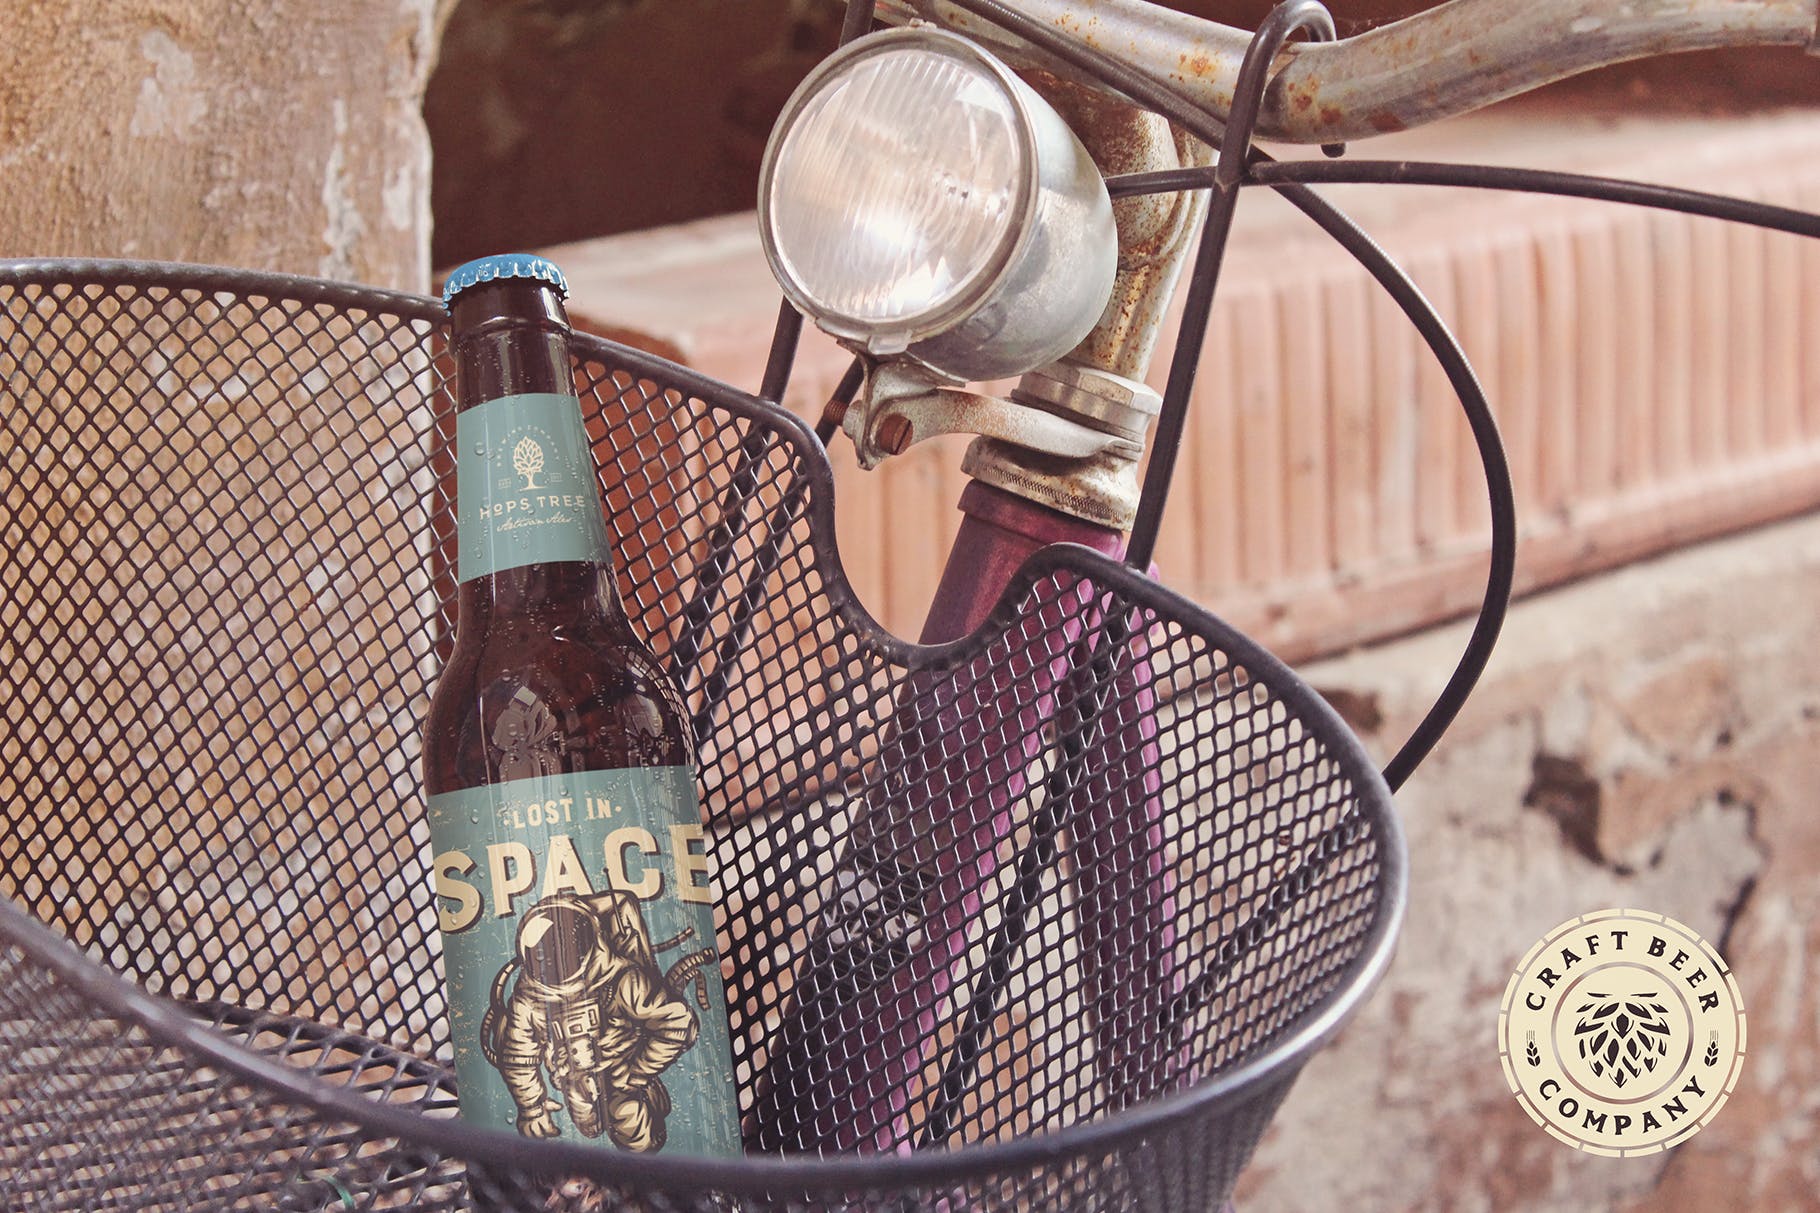 自行车篮啤酒瓶设计图第一素材精选 Bike Basket Beer Mockup插图(3)